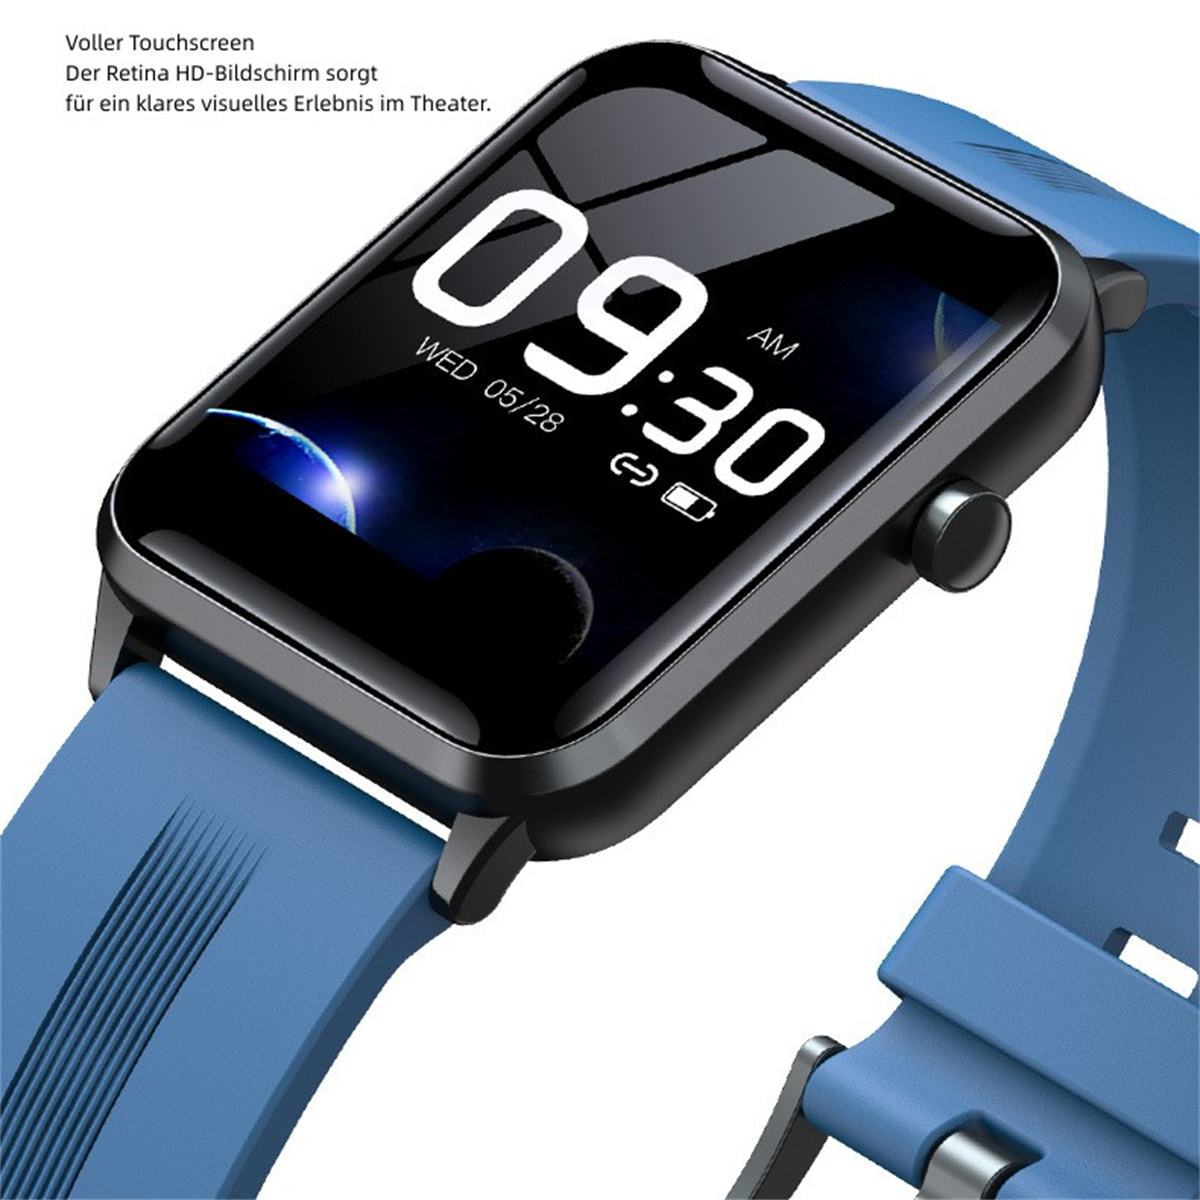 Control BRIGHTAKE Farbe Body Blau Uhr Großer Smartwatch Nachricht Push Blau Bildschirm Metall, Smartwatch Musik Slim